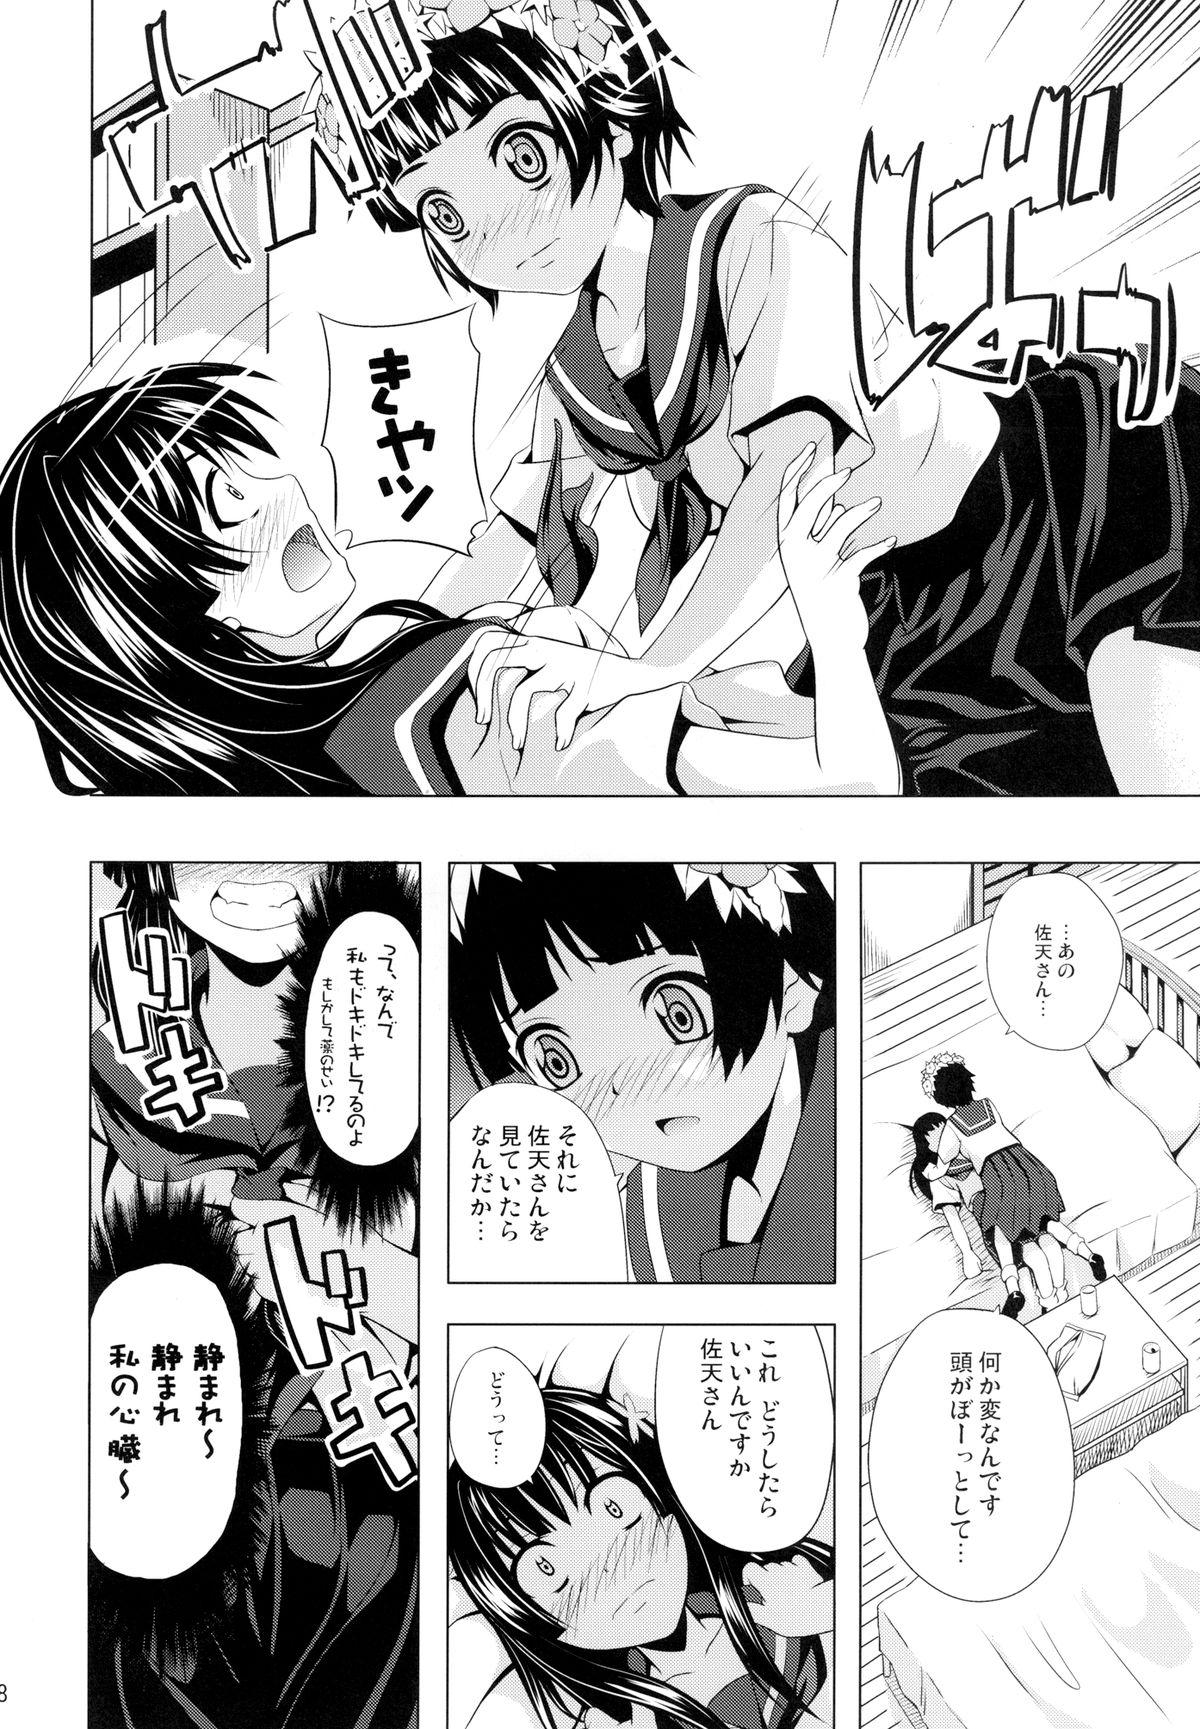 Sex Uiharu no U Saten no Sa - Toaru kagaku no railgun Cams - Page 8